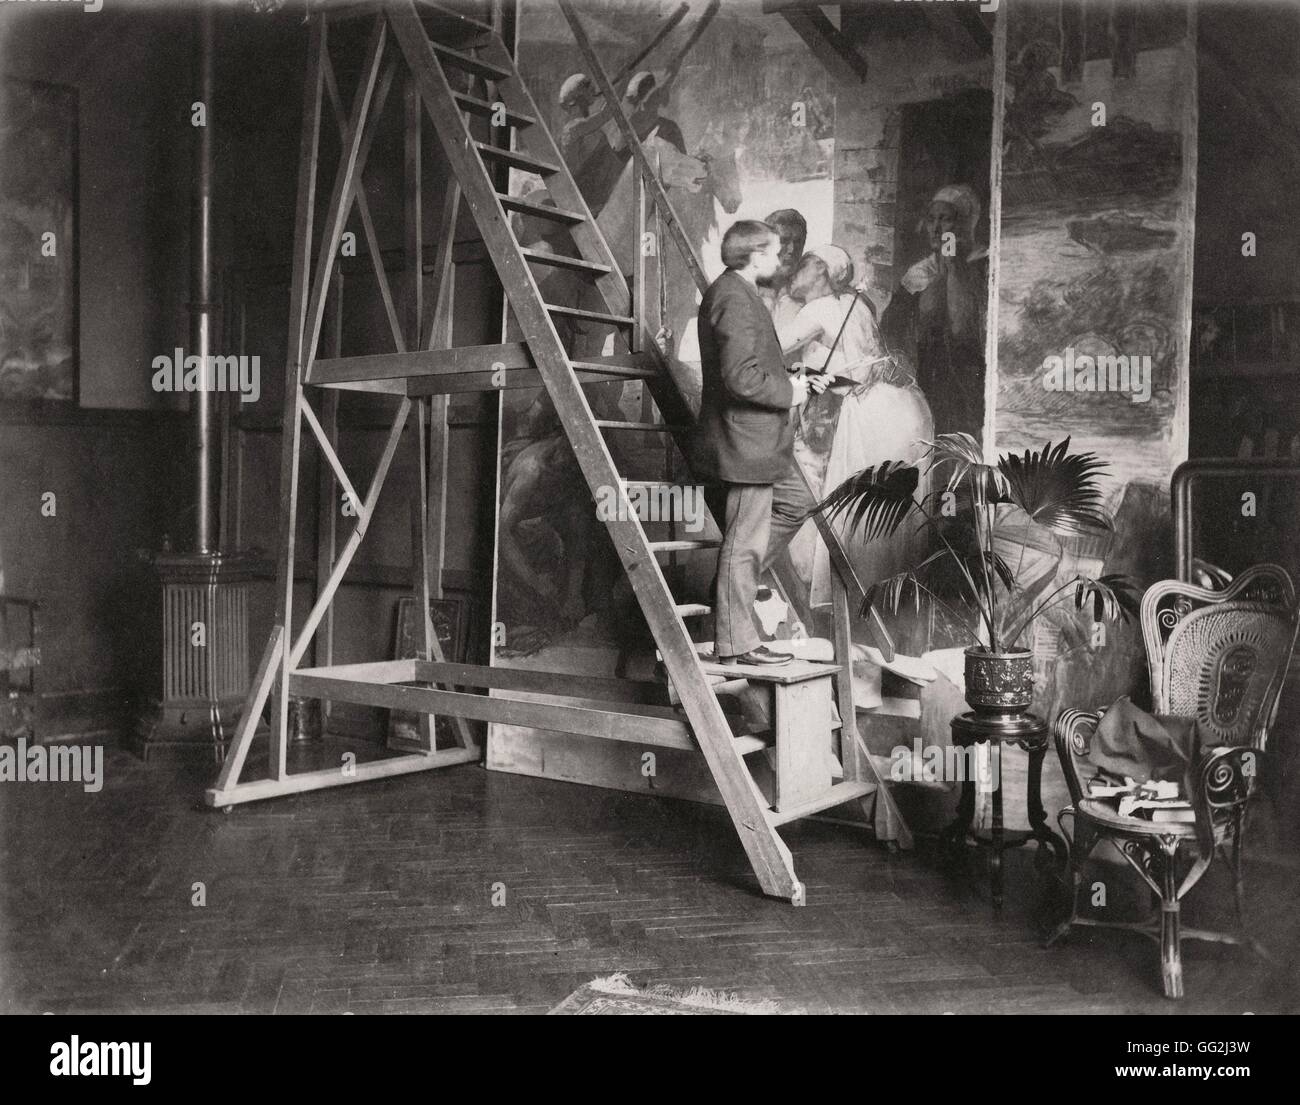 Französischer Maler Ferdinand Humbert im Atelier Paris (der Académie Humbert) 104 Boulevard de Clichy befindet sich im 18. Arrondissement in Paris. Foto von Edmond Bénard c.1885. Albumen print. Stockfoto